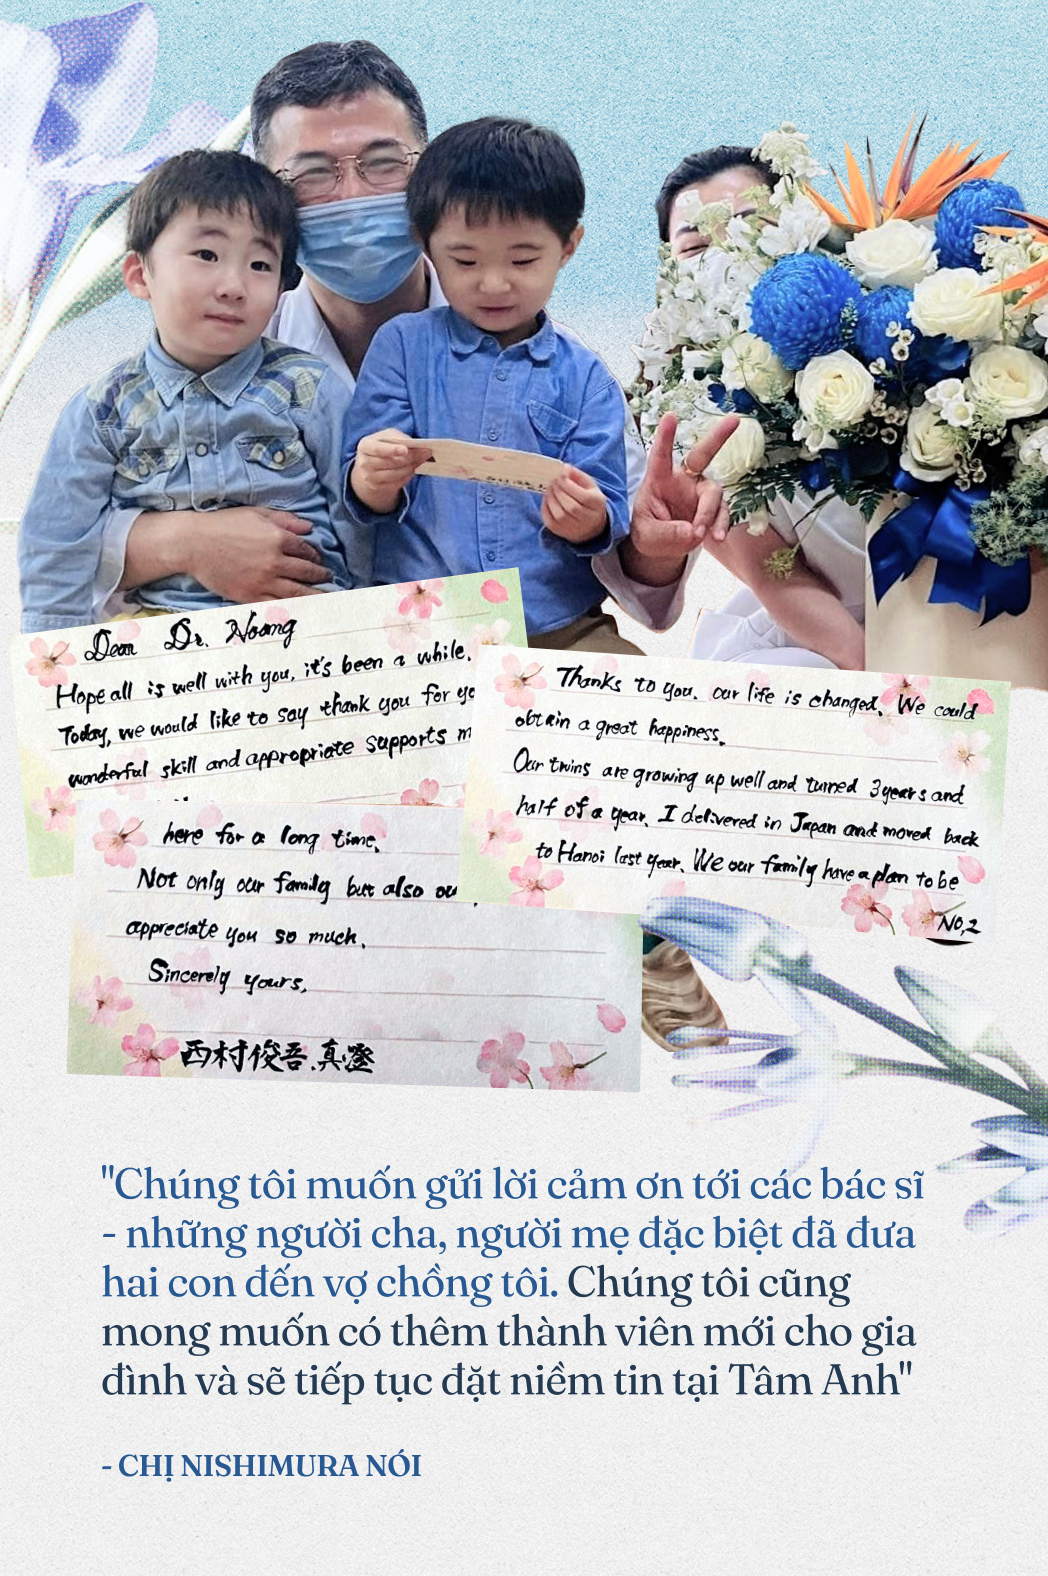 Cuộc hội ngộ đặc biệt của bác sĩ Việt và hai bé song sinh Nhật Bản: “Cảm ơn những người cha, người mẹ đã đưa con đến với vợ chồng tôi” - Ảnh 4.